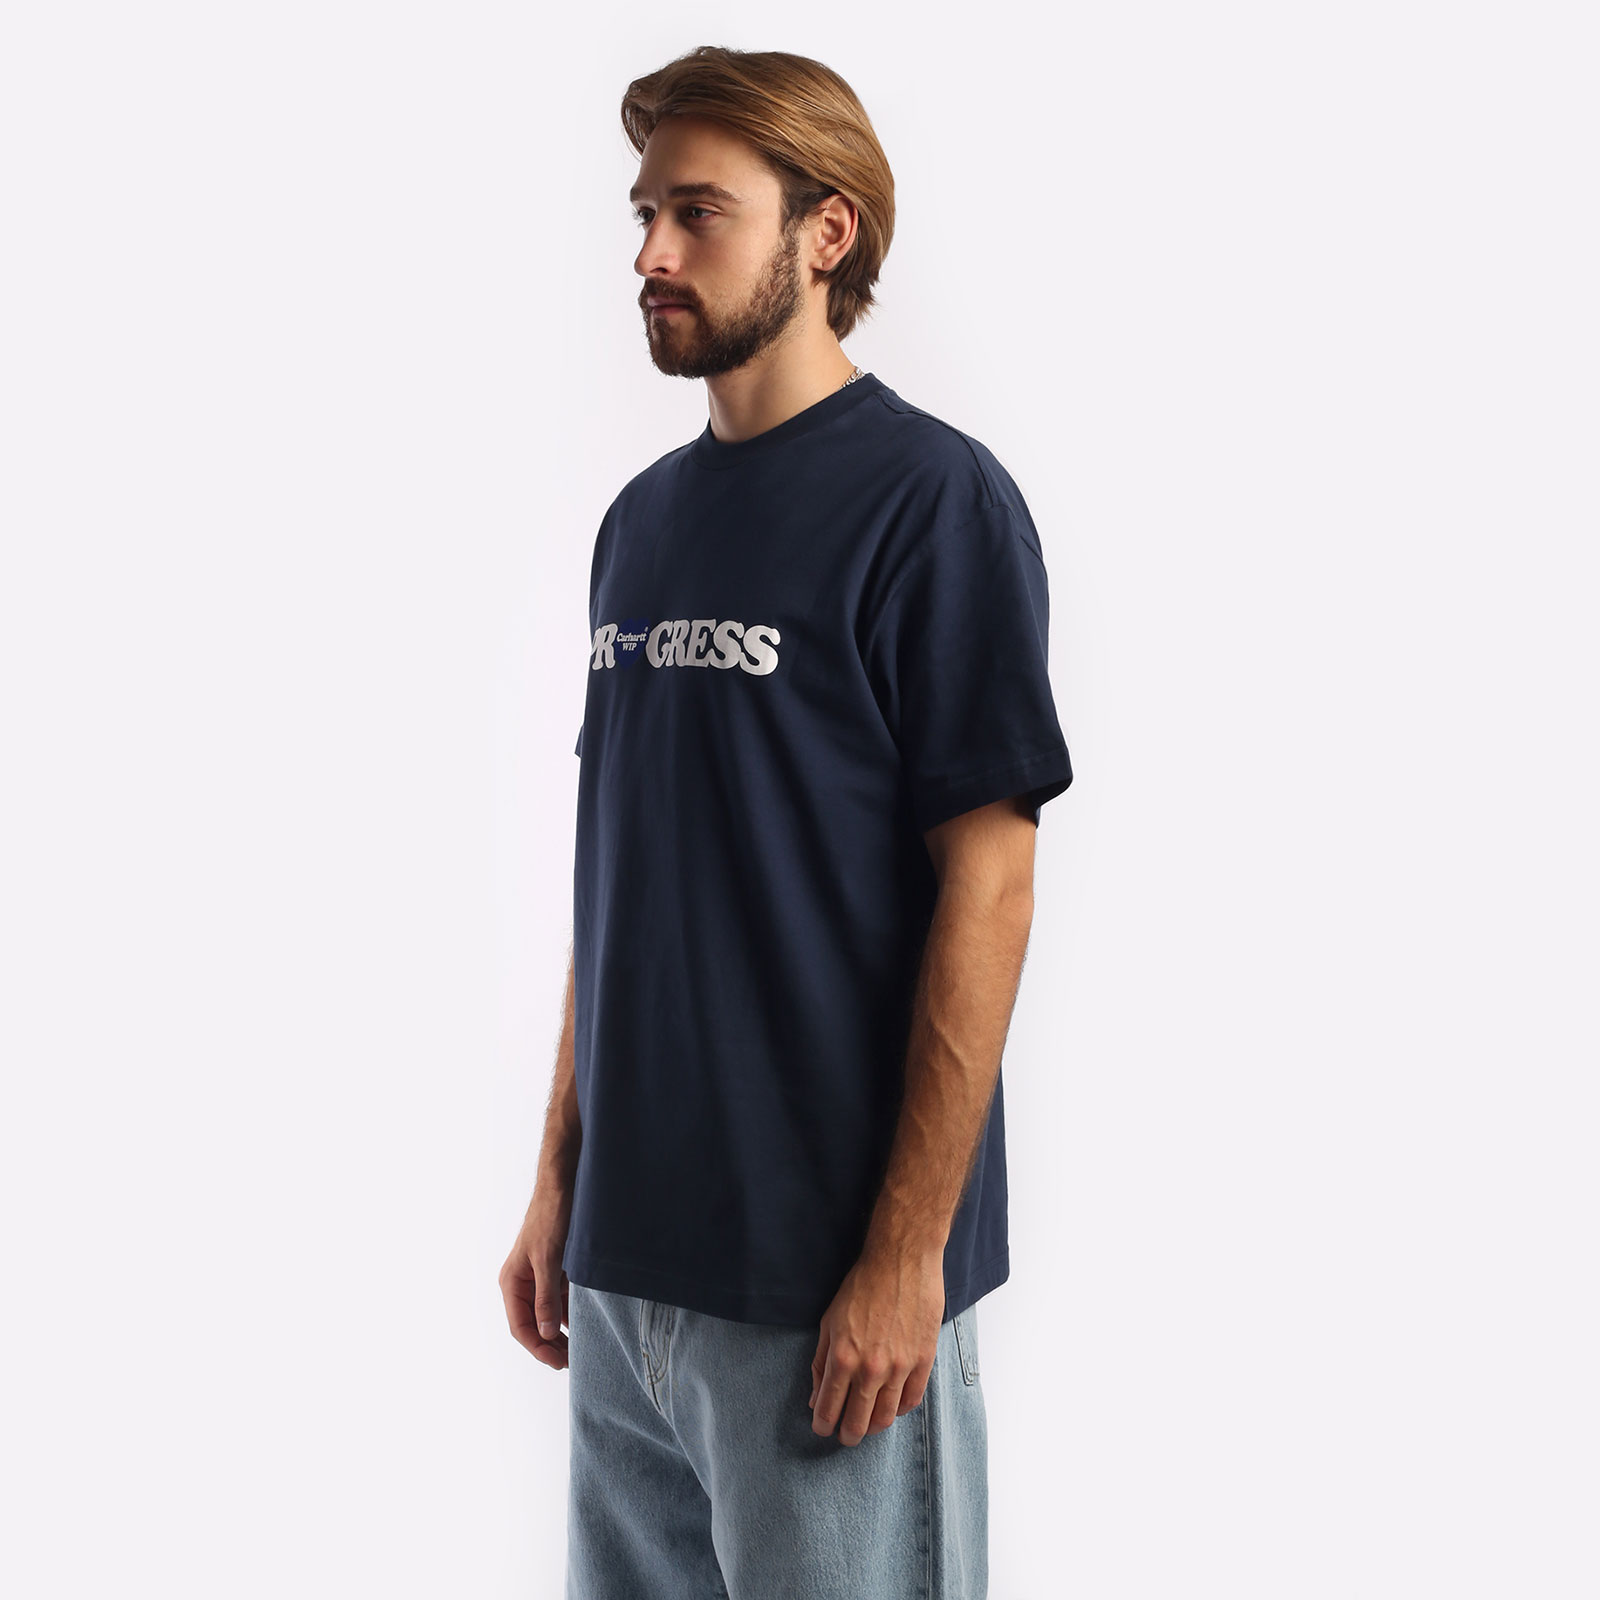 мужская футболка Carhartt WIP S/S I Heart Progress T-Shirt  (I032378-blue)  - цена, описание, фото 4